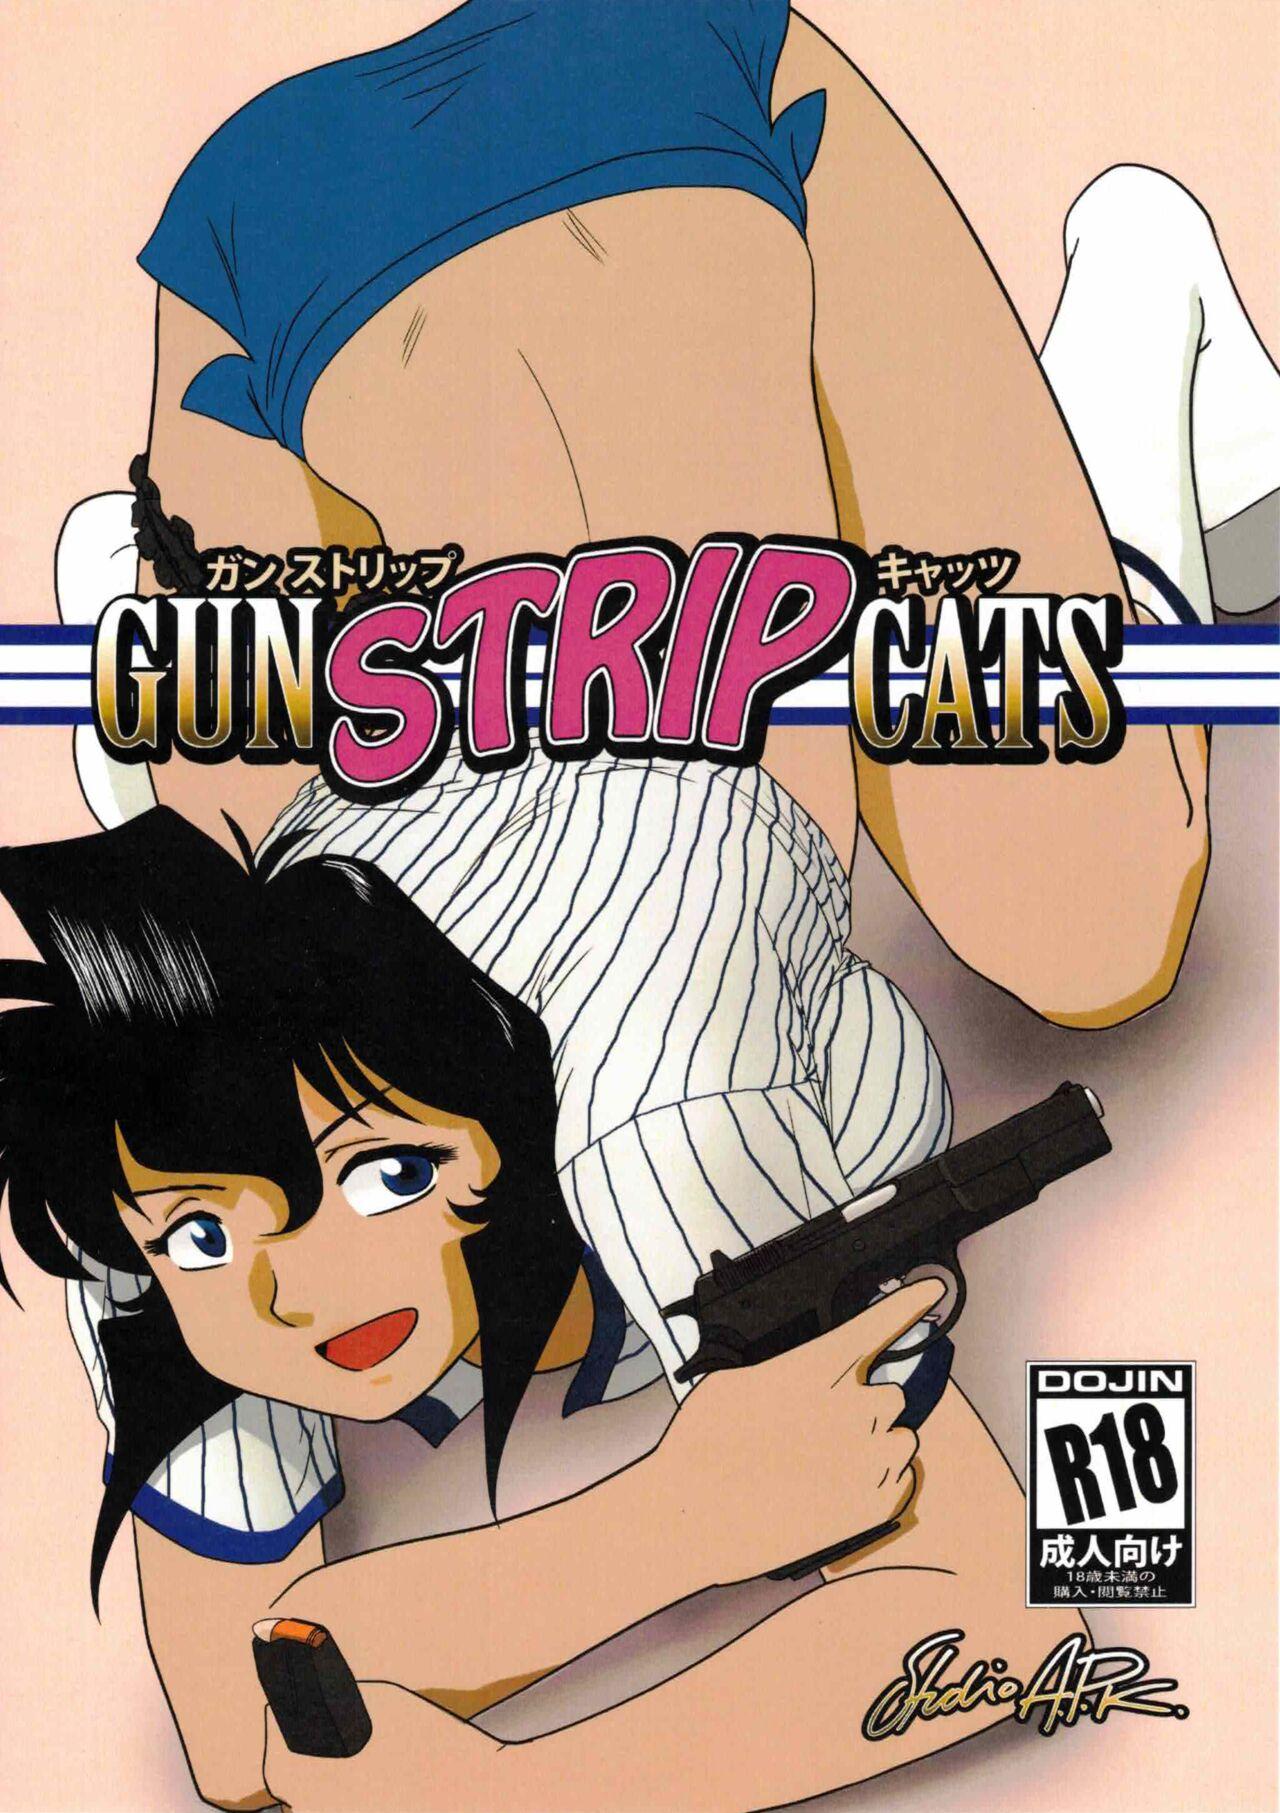 GunStrip Cats 0